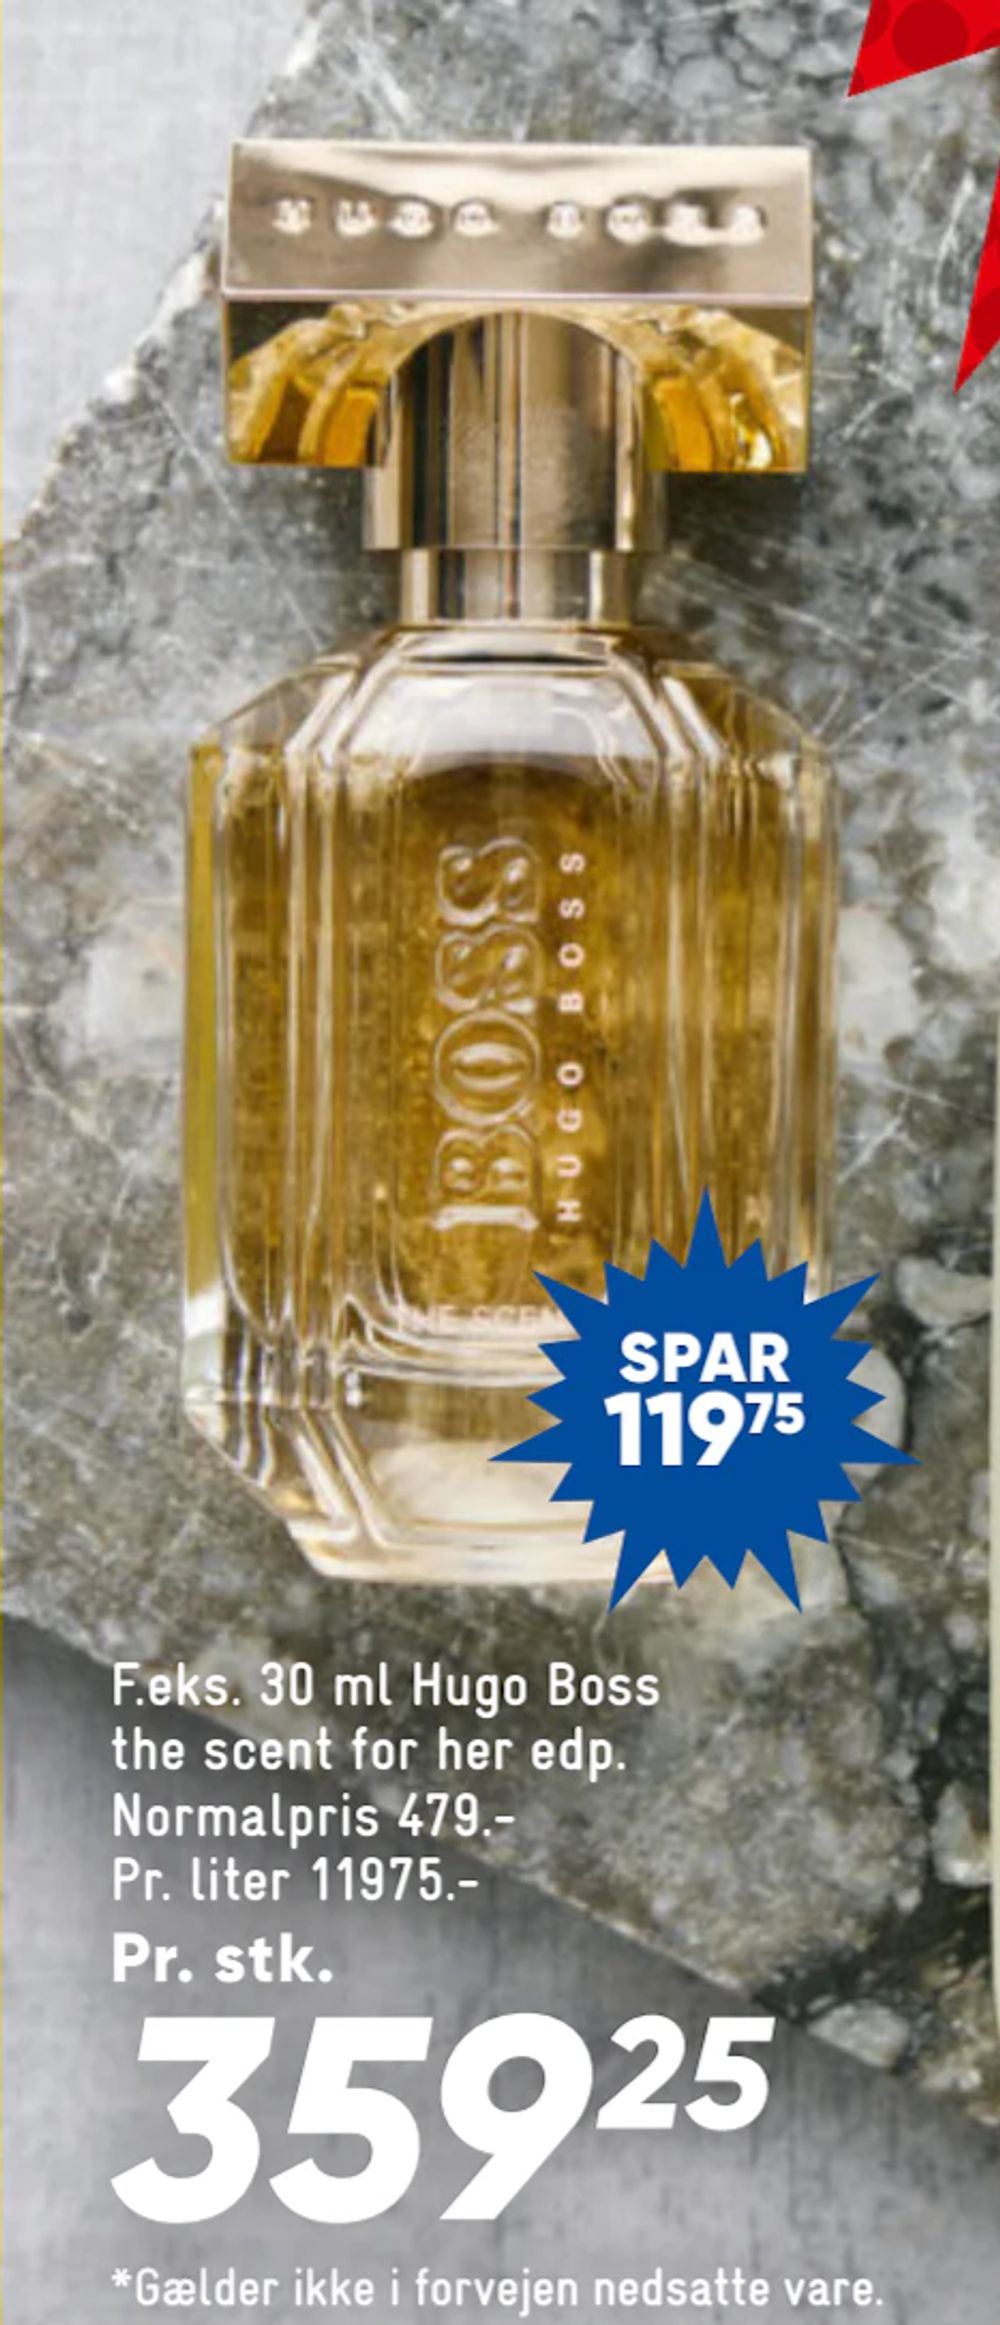 Tilbud på 30 ml Hugo Boss the scent for her edp fra Bilka til 359,25 kr.